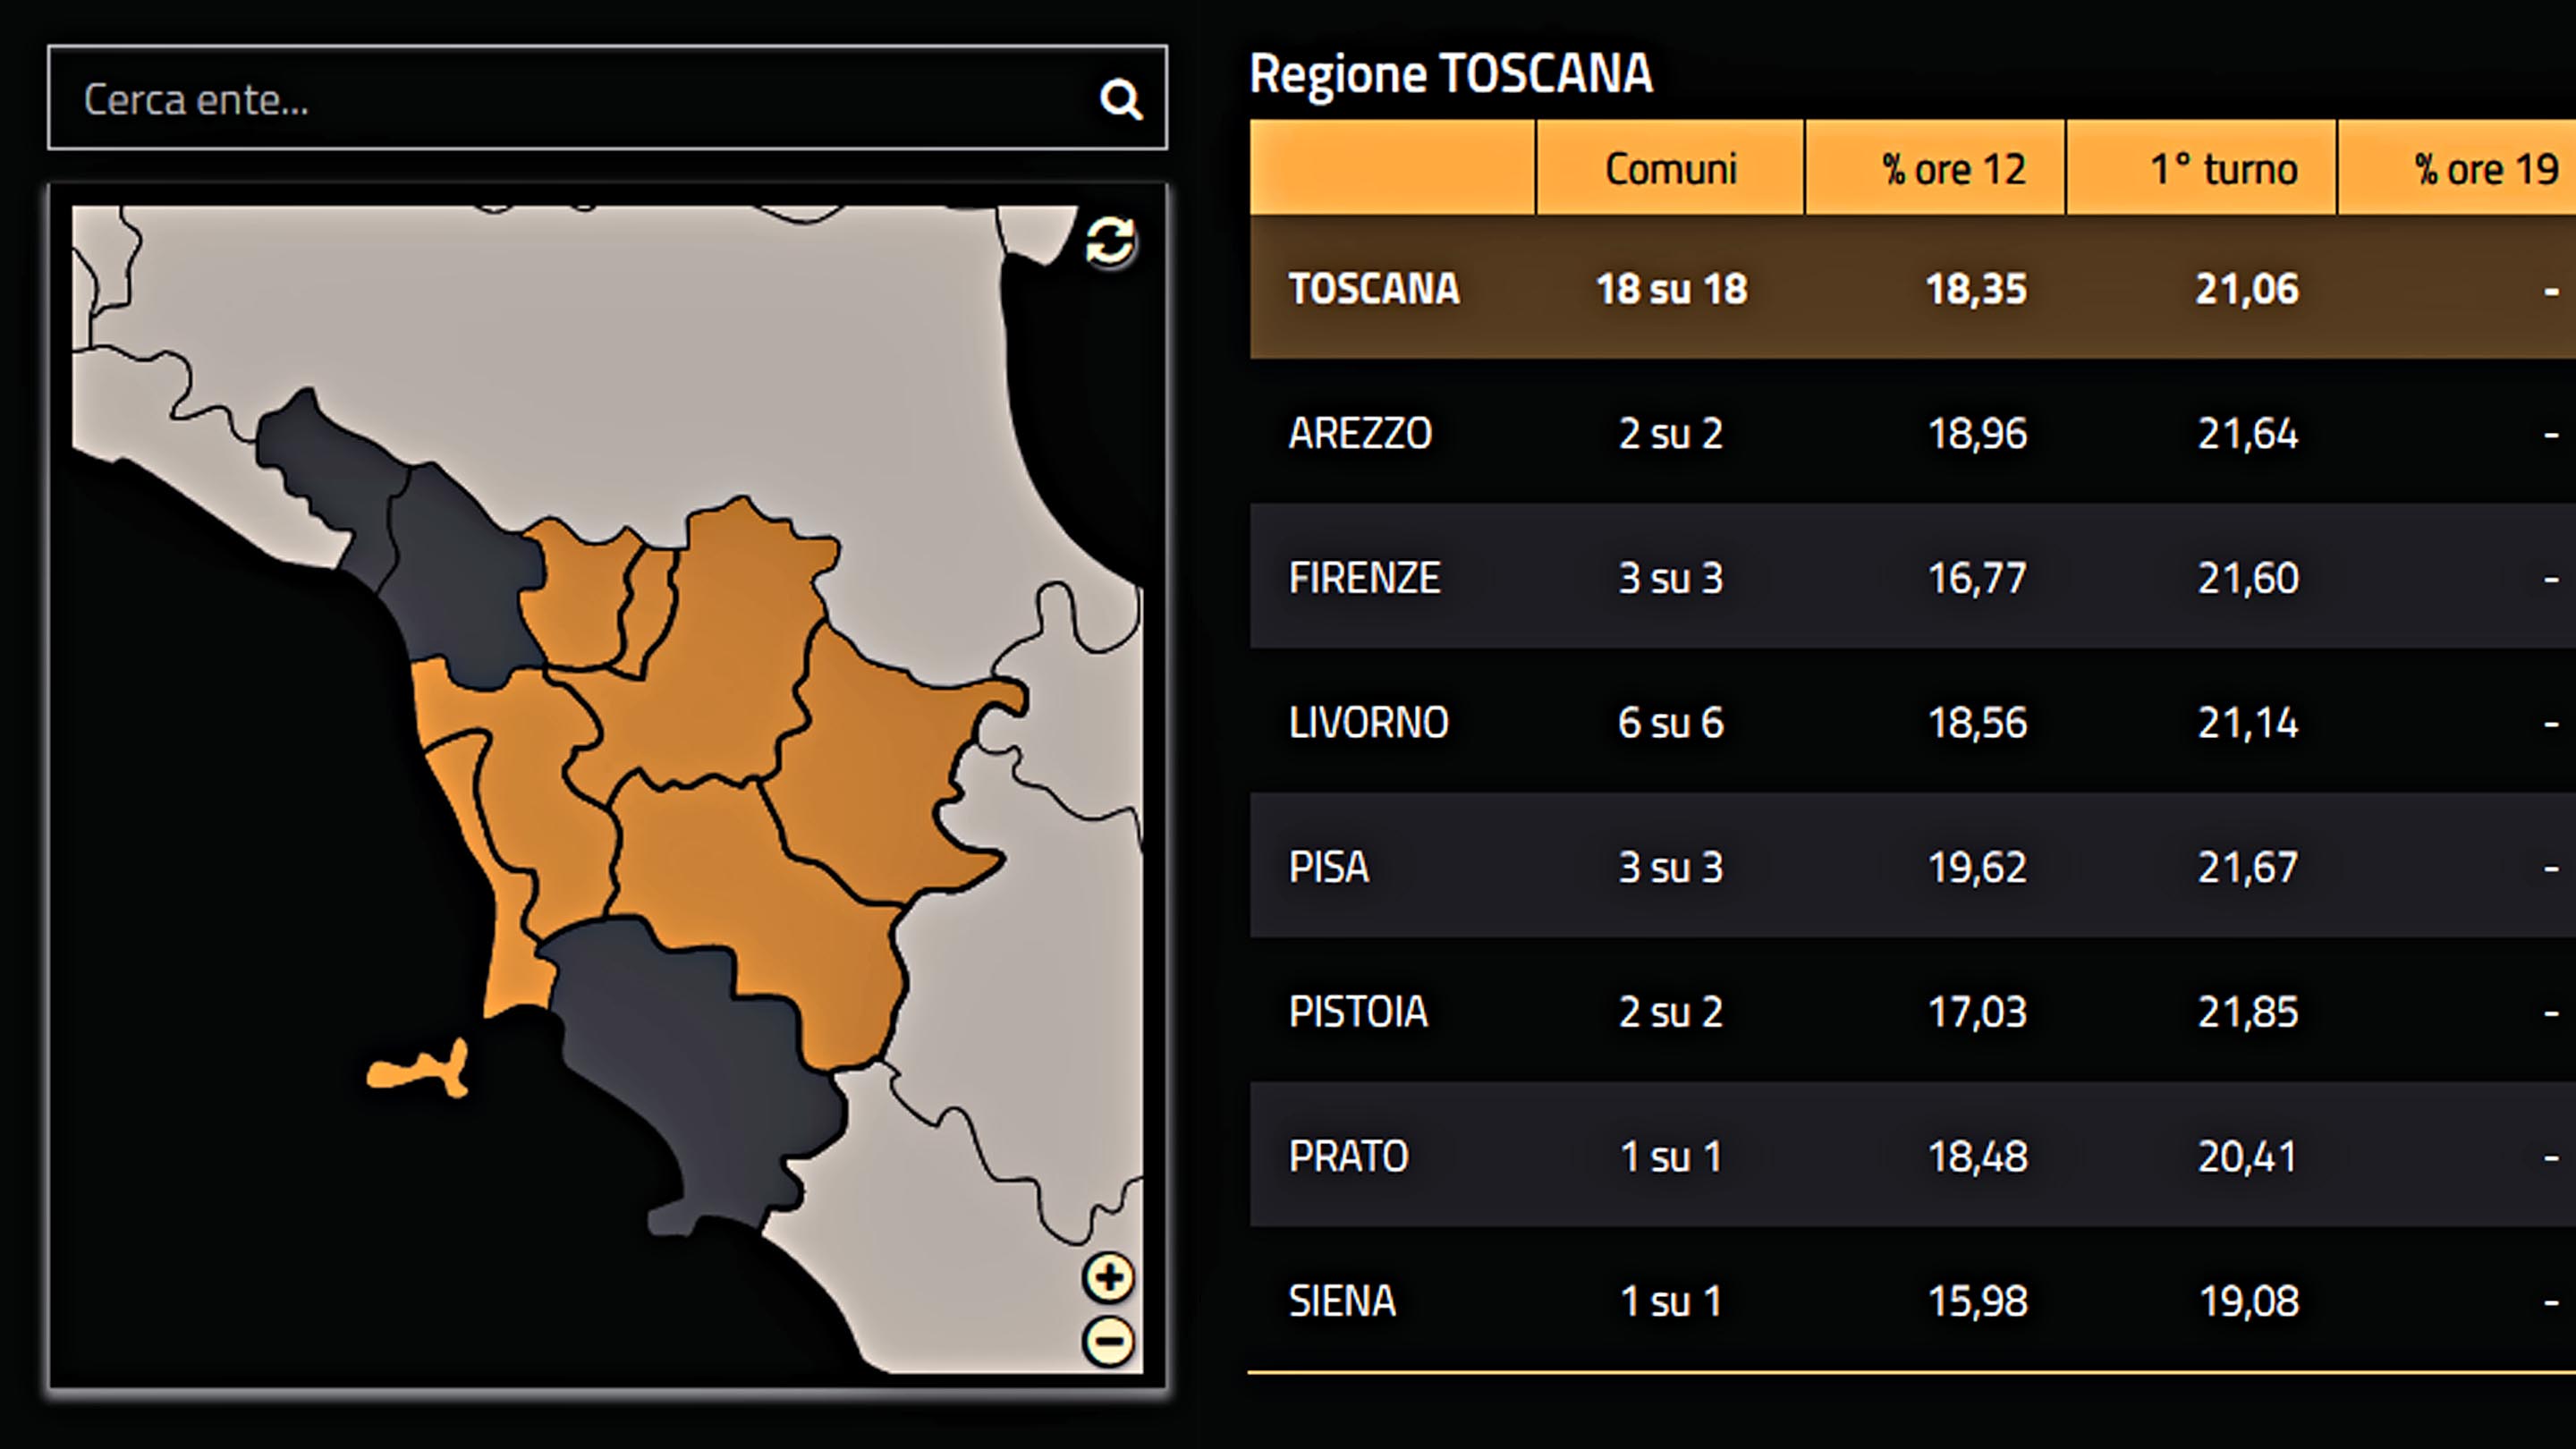 Cala affluenza ballottaggi anche in Toscana rispetto 1°turno